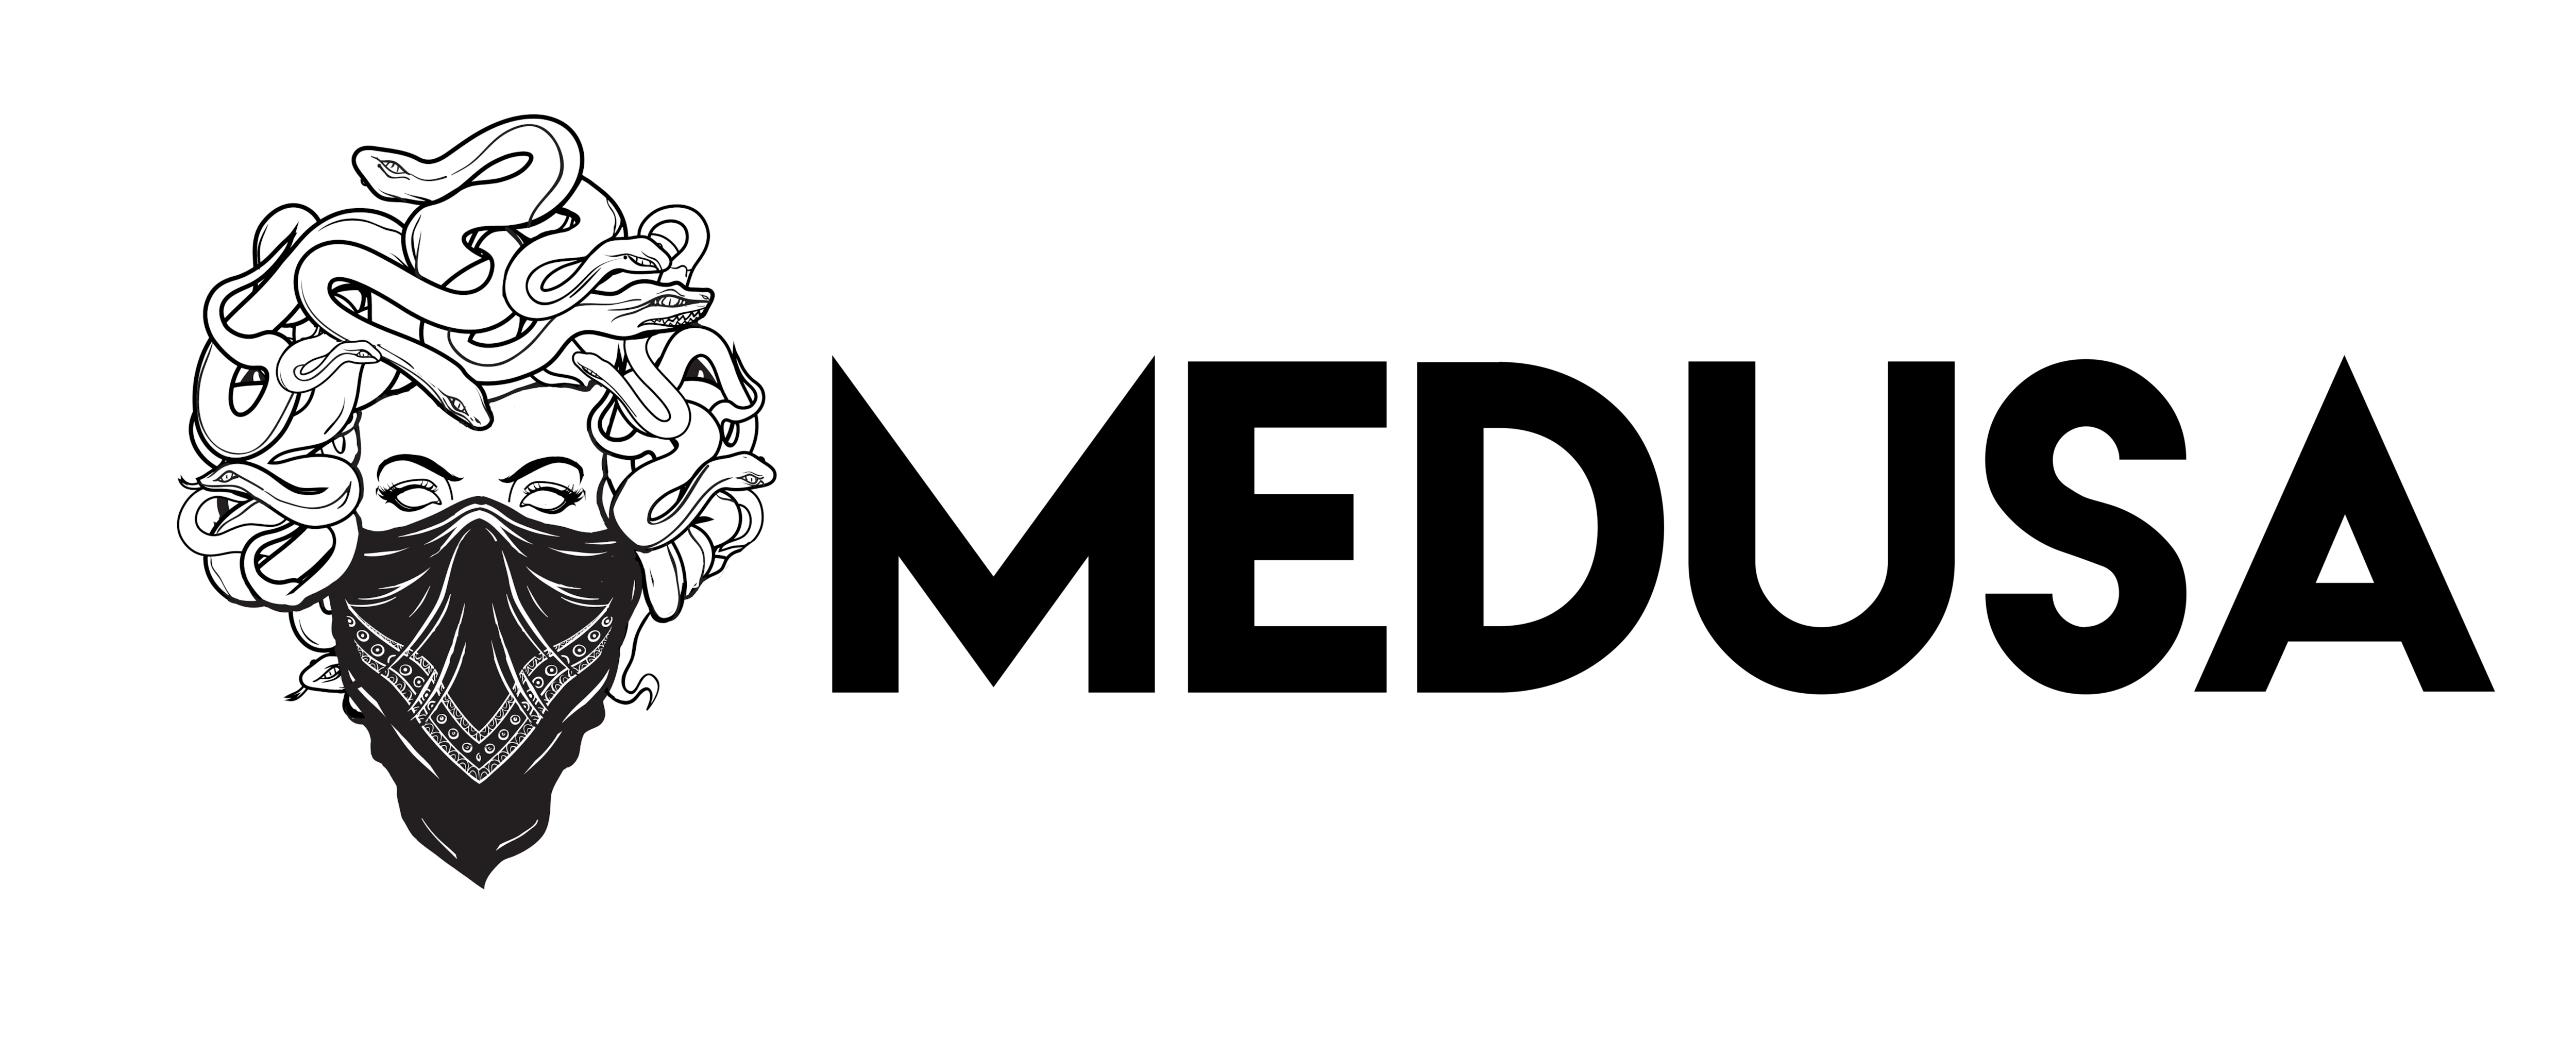 Medusa Logo - Medusa Official Online Store | Fashion Clothing for Men and Women